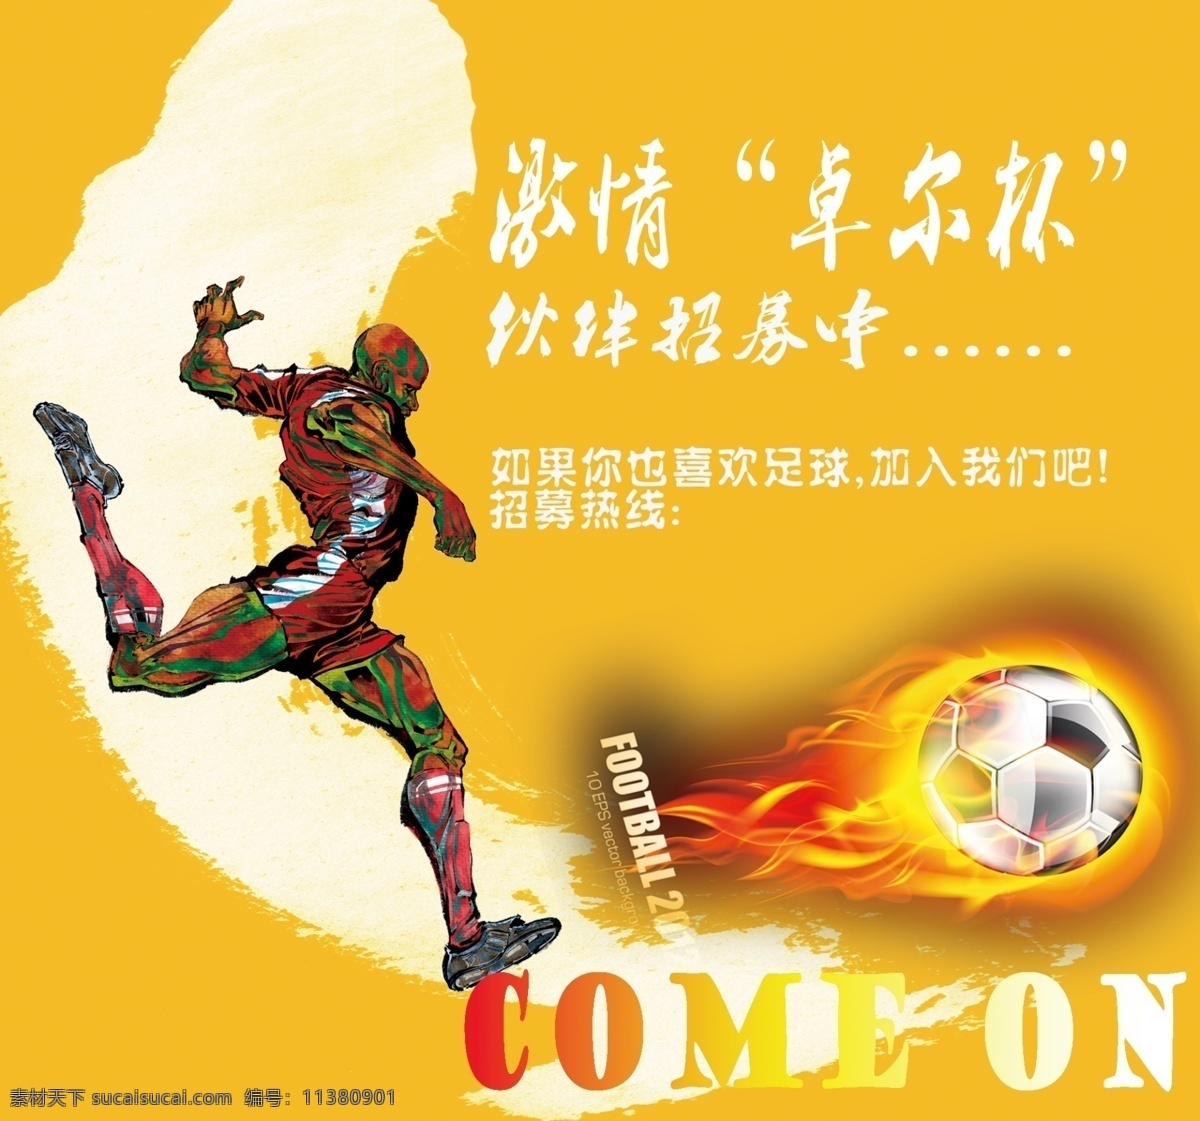 足球 招募 海报 火焰足球 足球素材 足球运动员 激情足球海报 足球招募海报 原创设计 原创海报